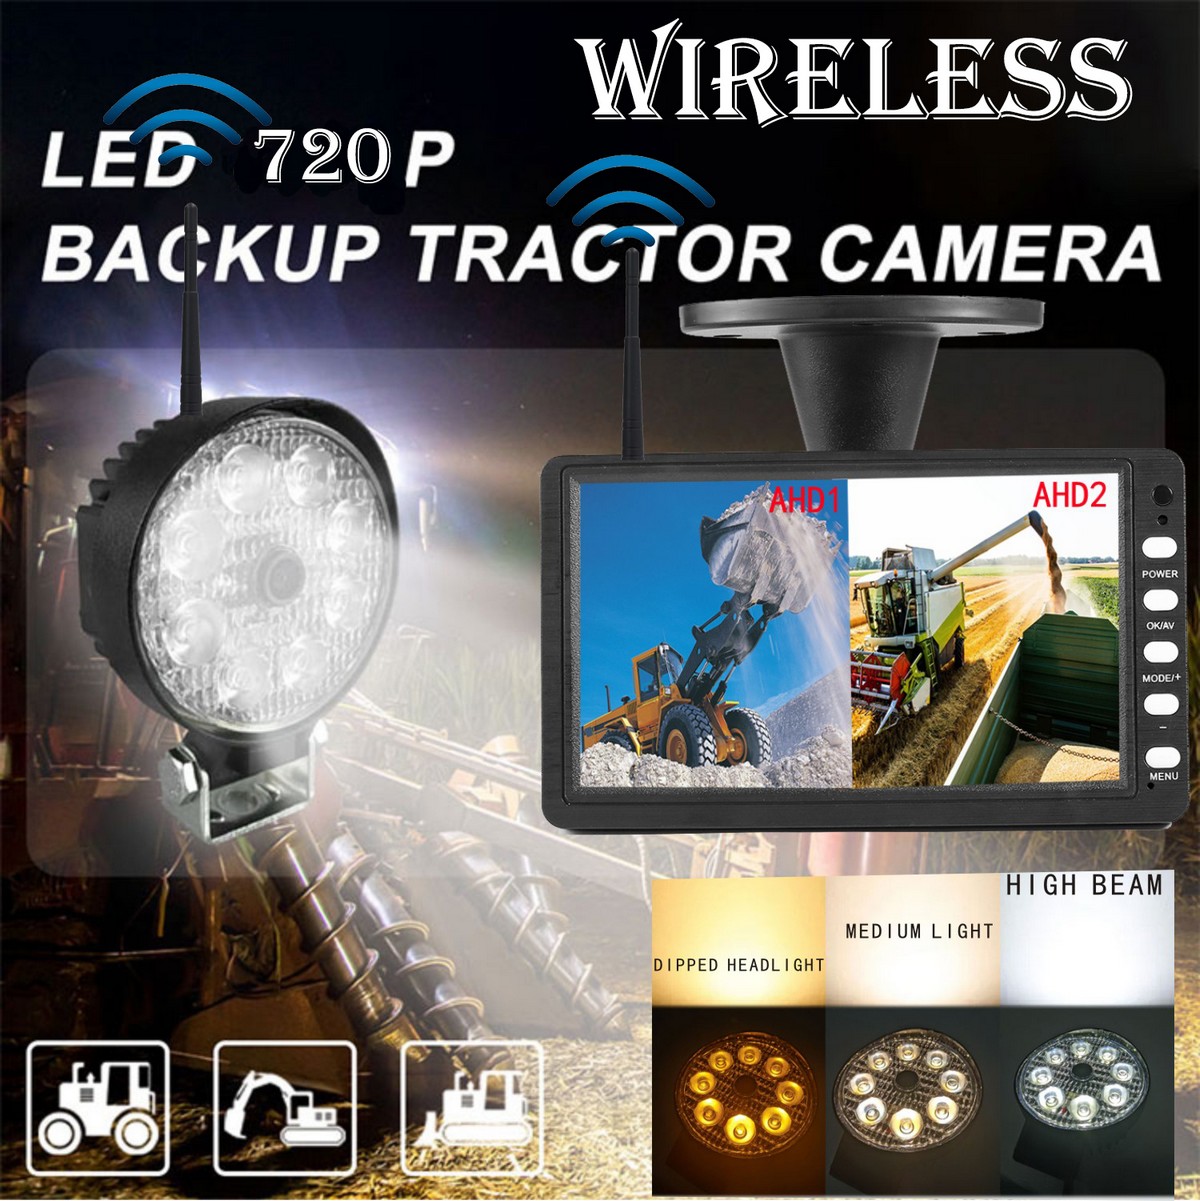 Conjunto de copia de seguridad: cámara wifi con potente luz LED blanca y muchas funciones